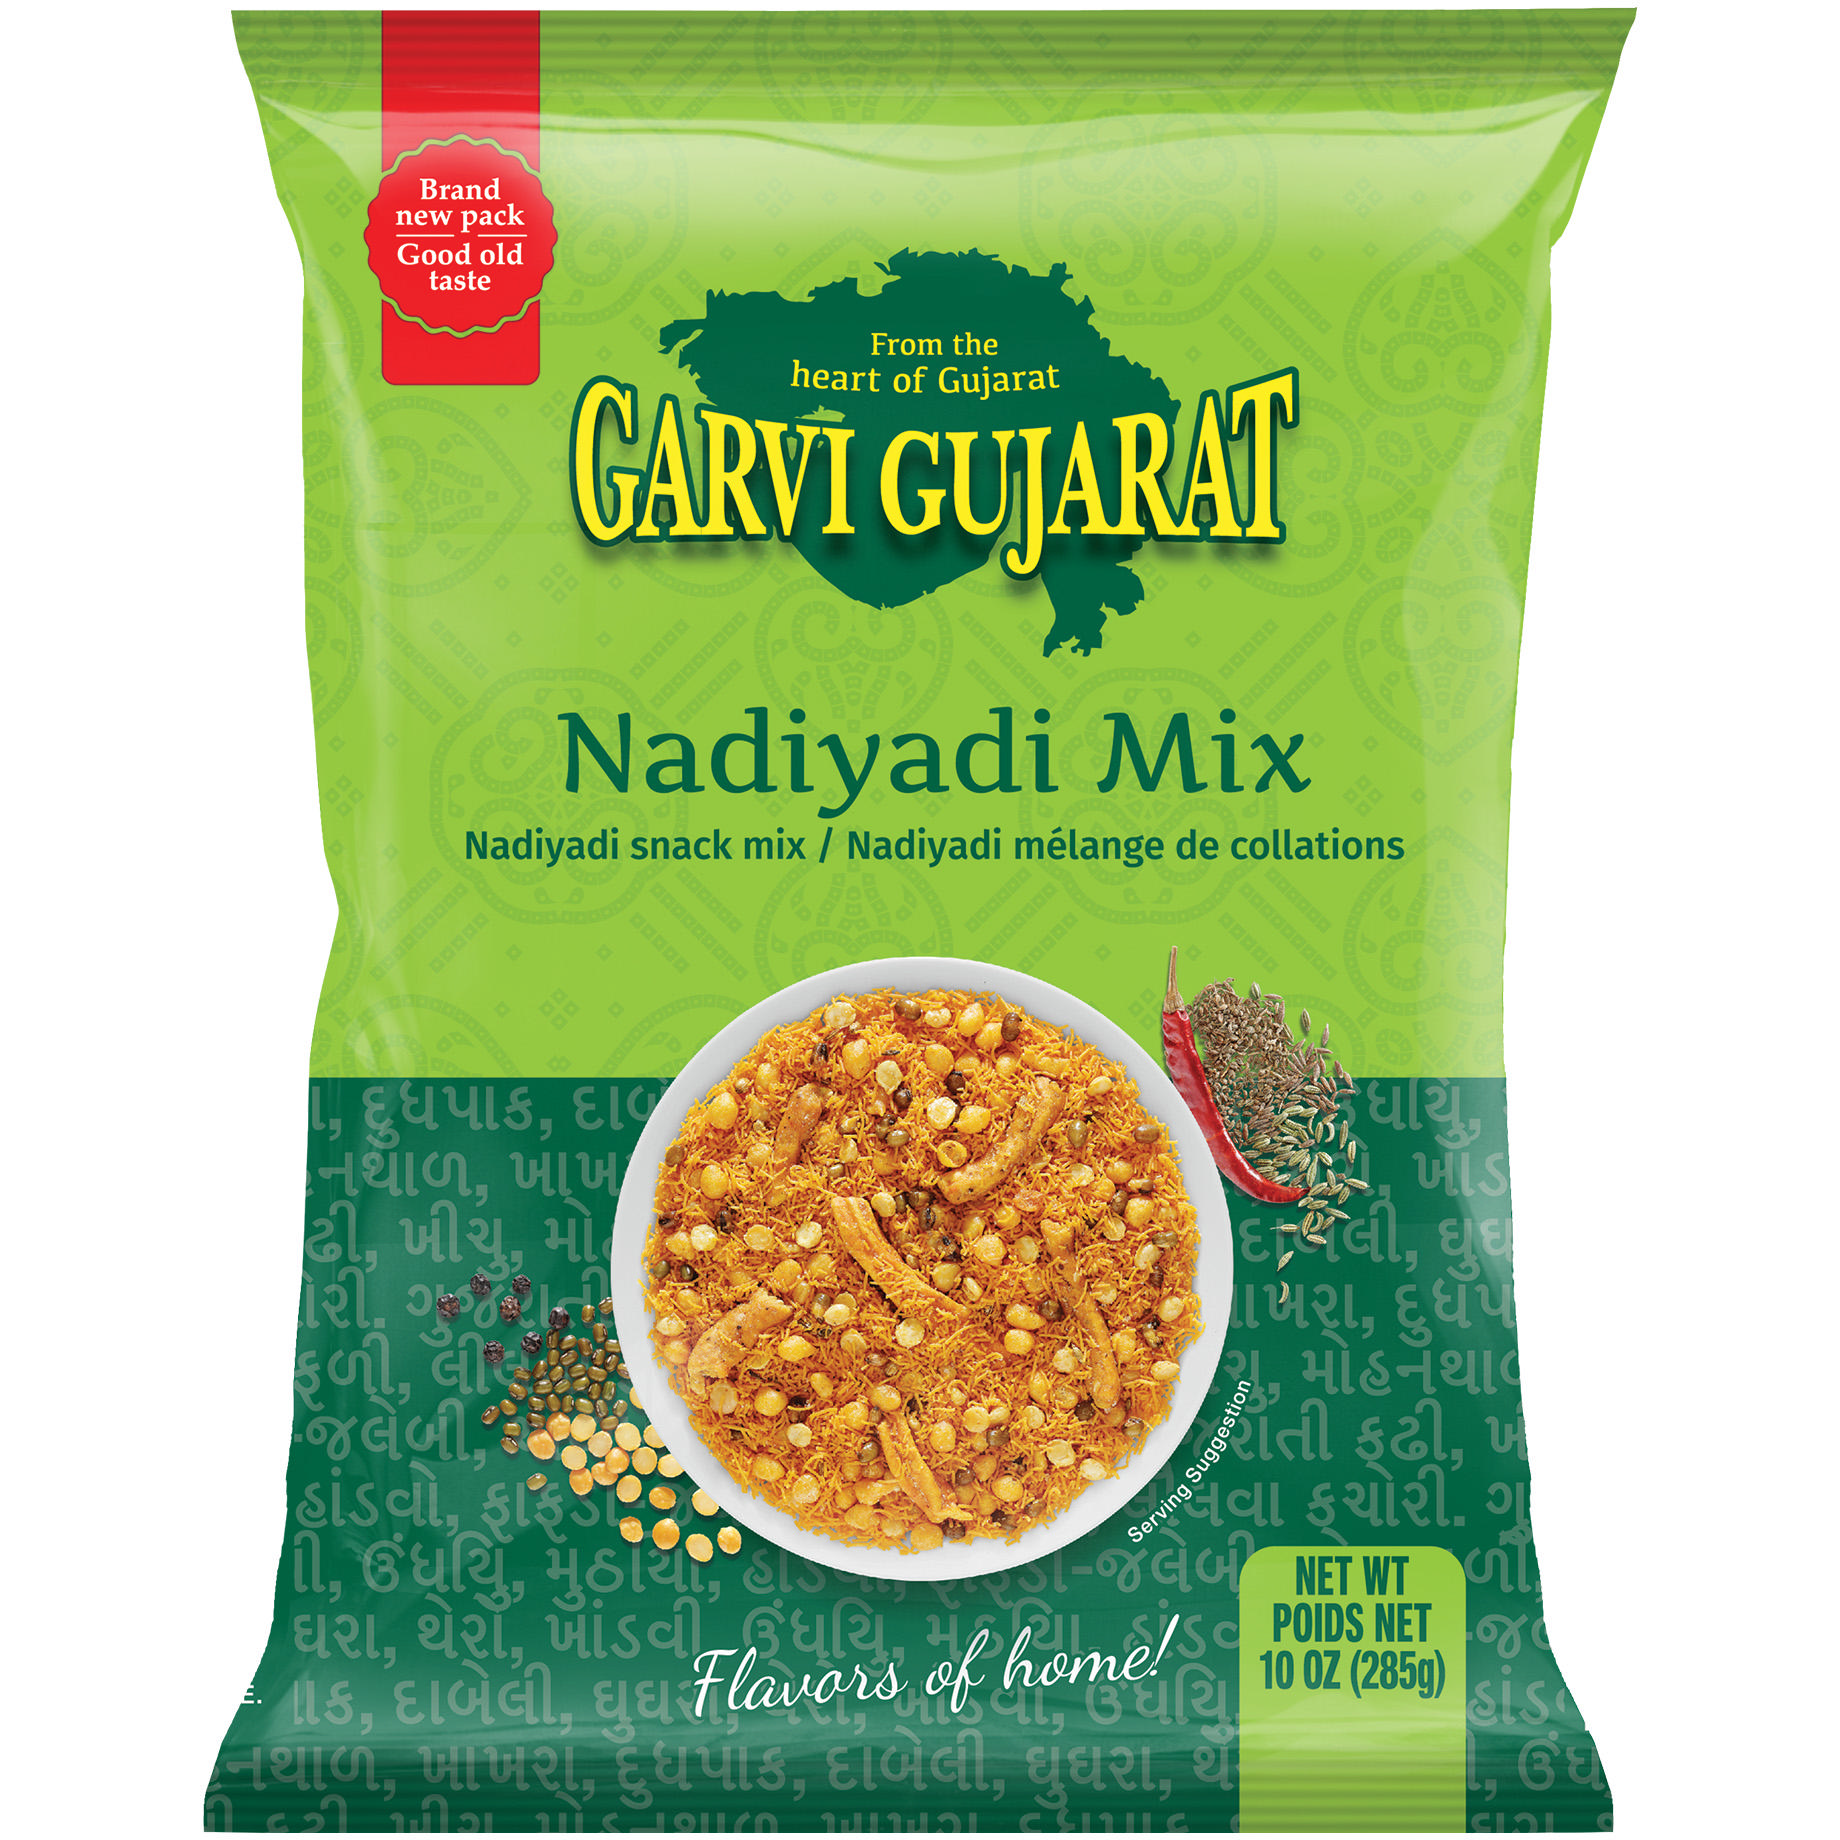 Case of 20 - Garvi Gujarat Nadiyadi Mix - 10 Oz (285 Gm)